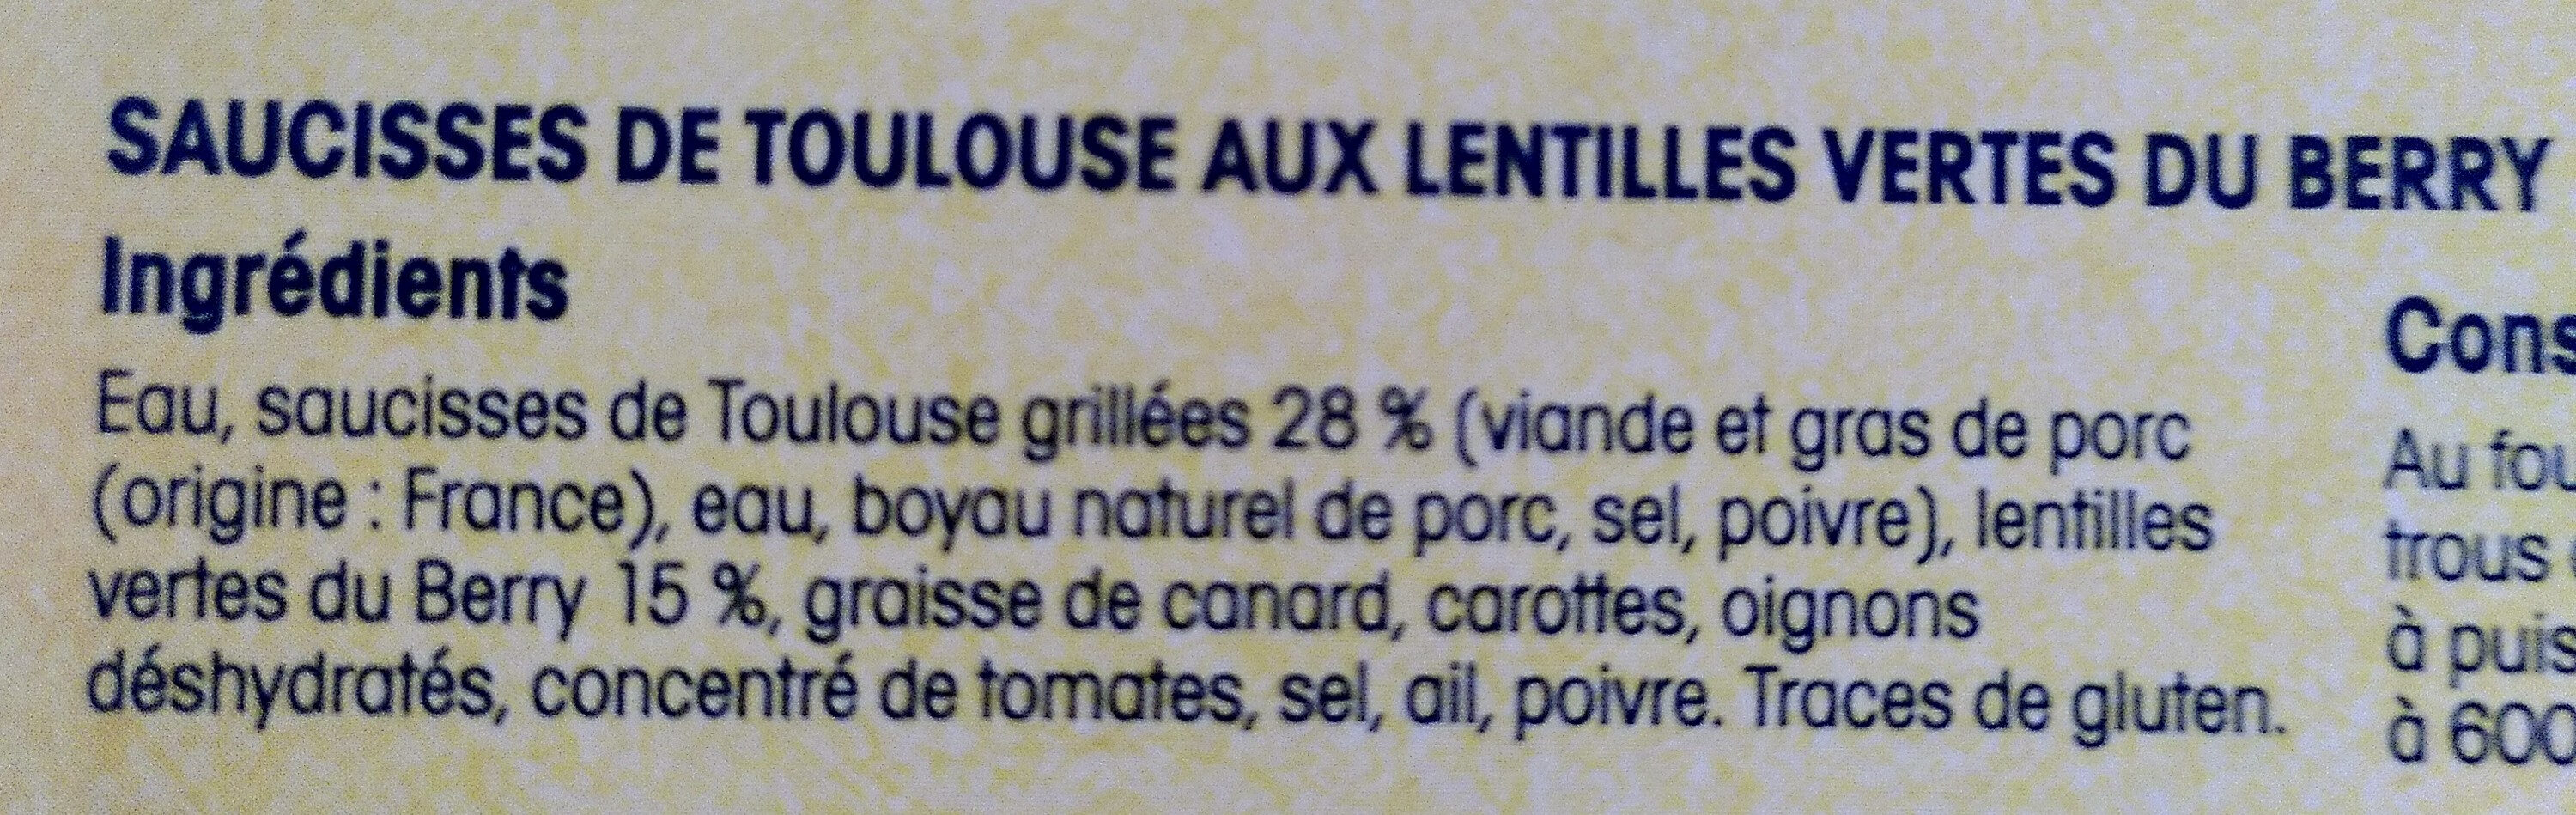 Saucisses de Toulouse aux lentilles vertes du Berry - Ingrédients